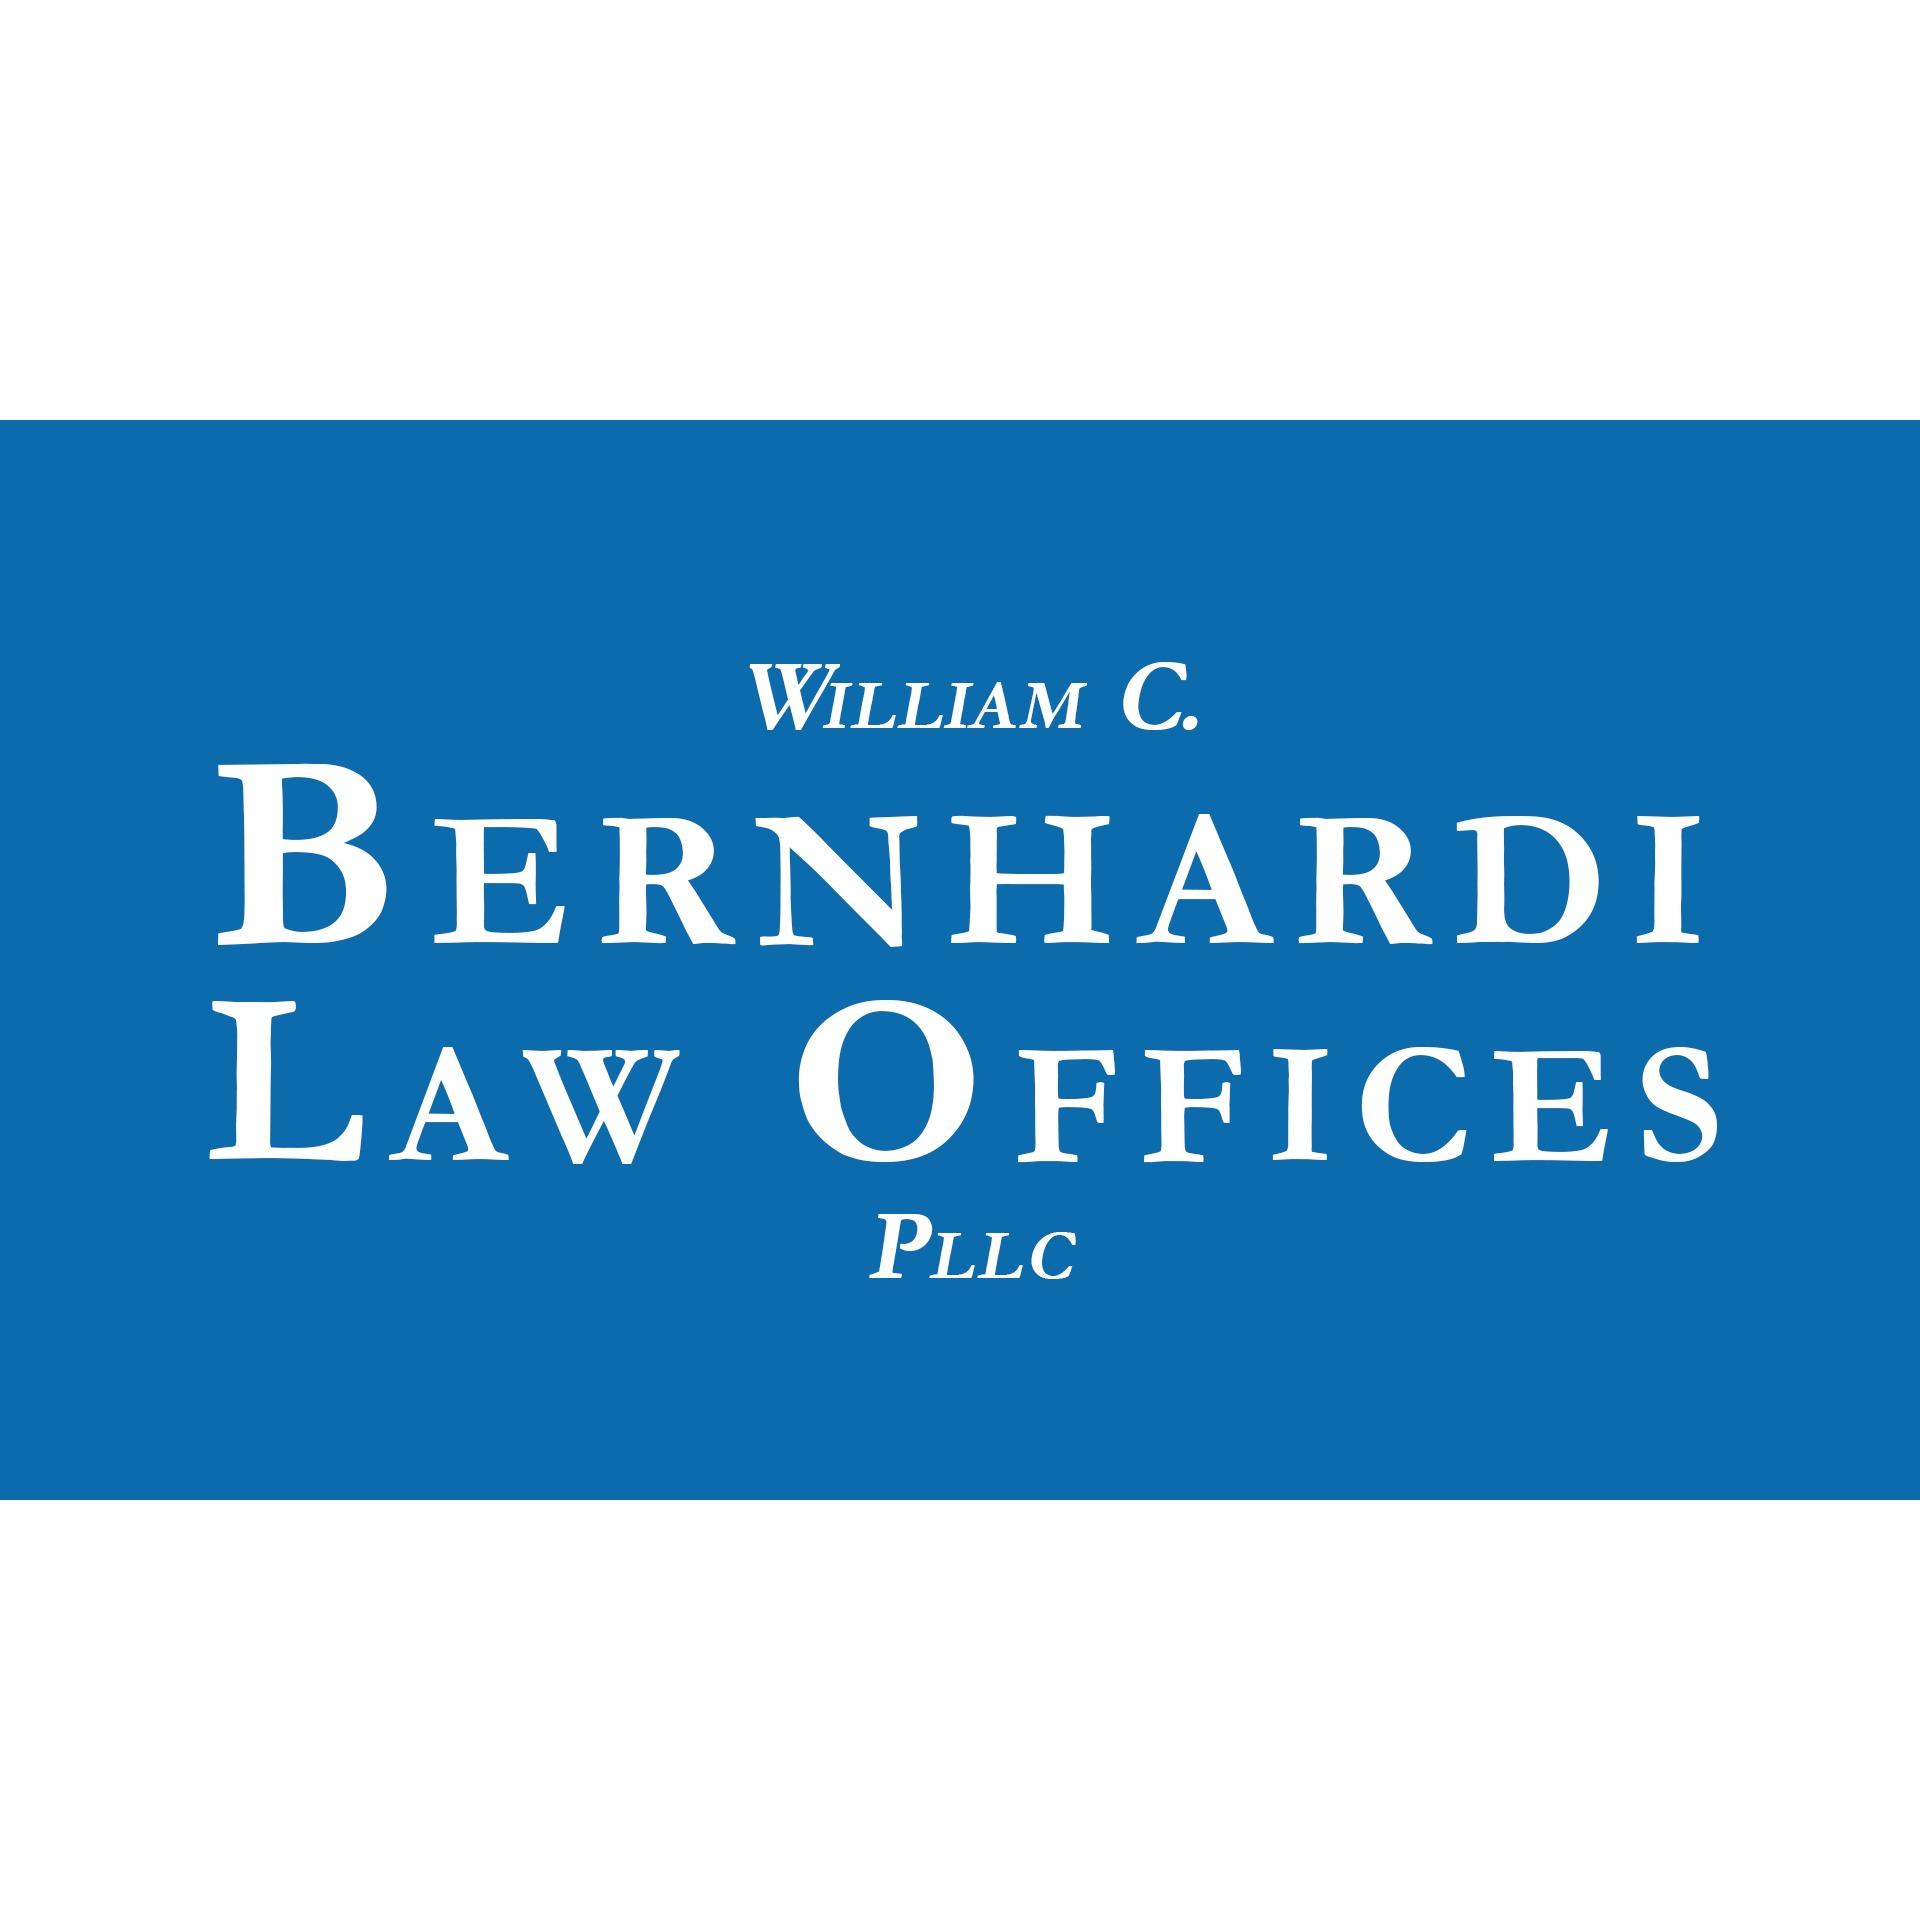 William C. Bernhardi Law Offices, PLLC